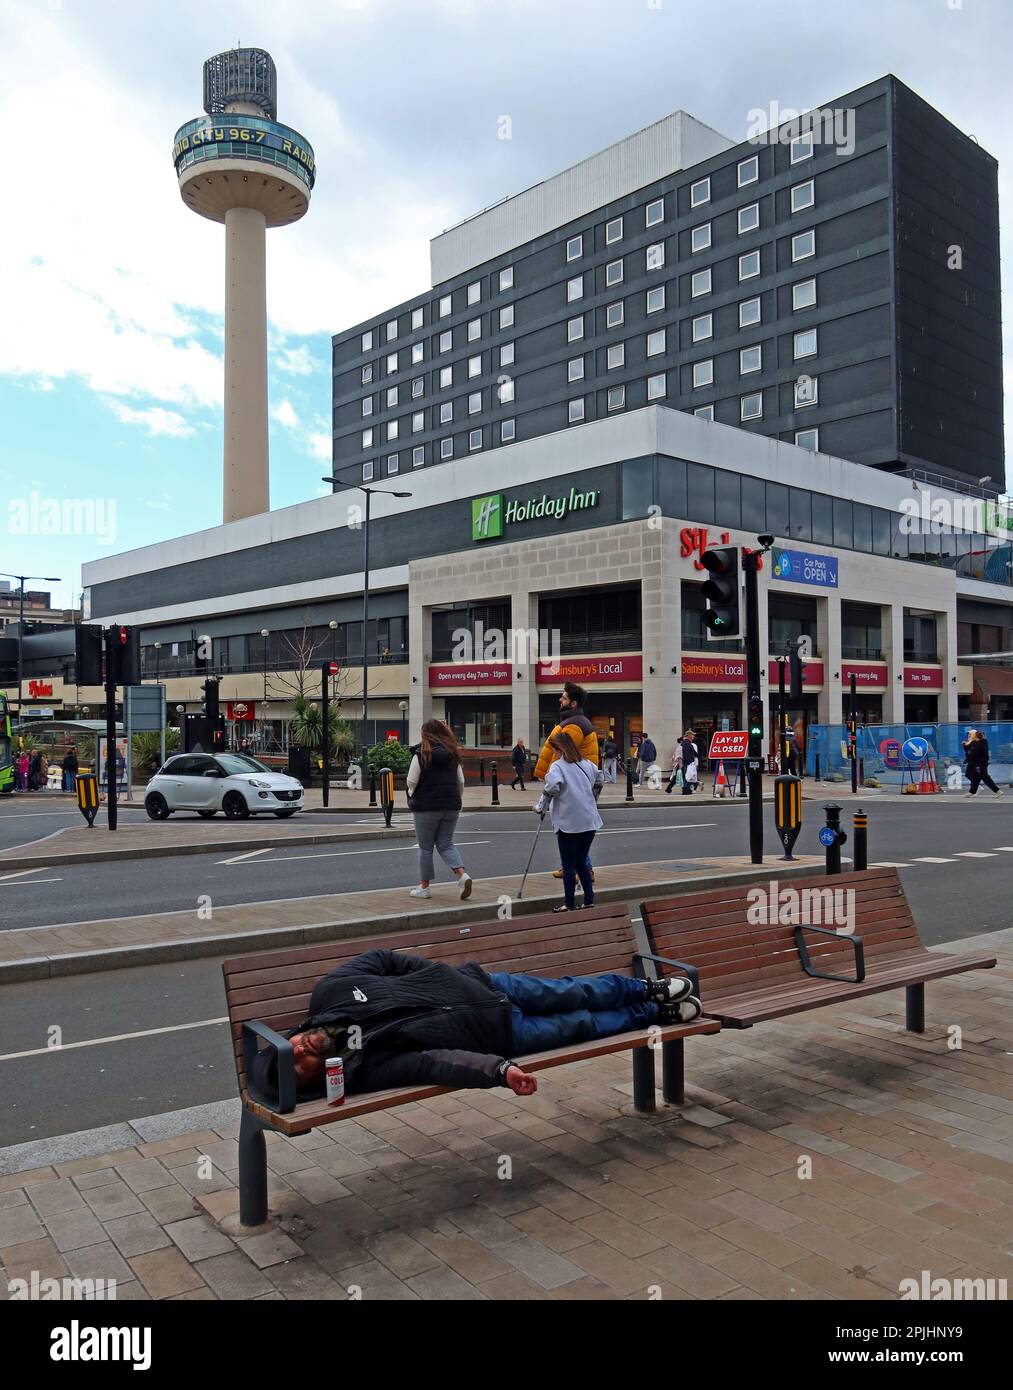 Liverpool - il centro di St Johns, Holiday Inn, radio City Tower e un uomo addormentato su una panchina, Lime Street, Liverpool, Merseyside, Inghilterra Foto Stock